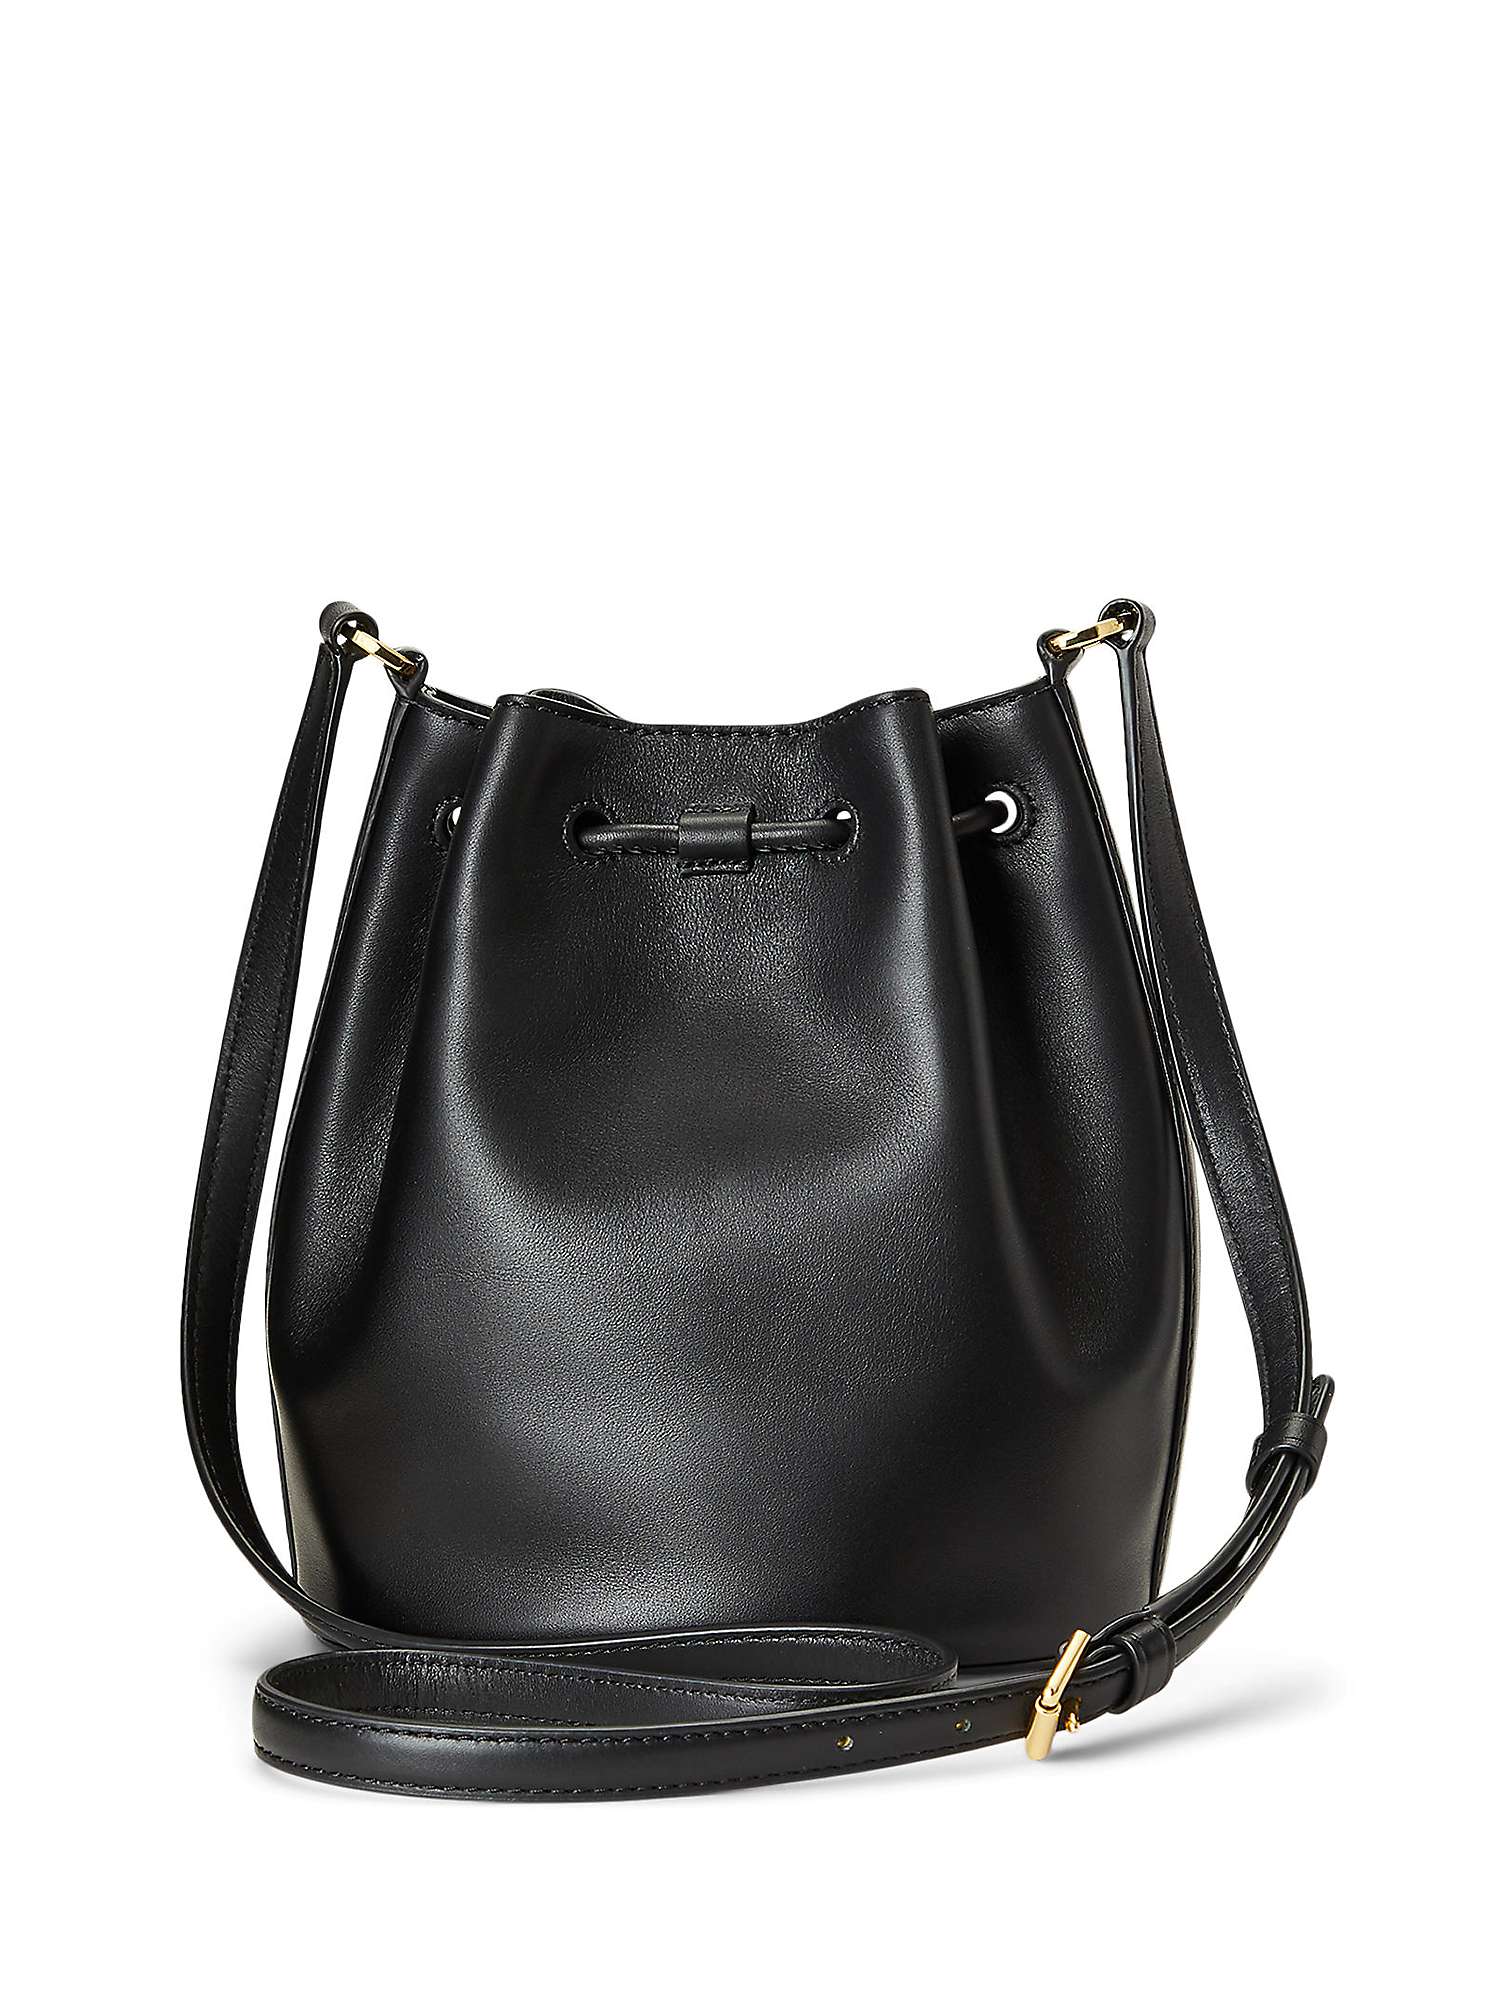 Lauren Ralph Lauren Andie 19 Leather Bucket Bag, Black at John Lewis ...